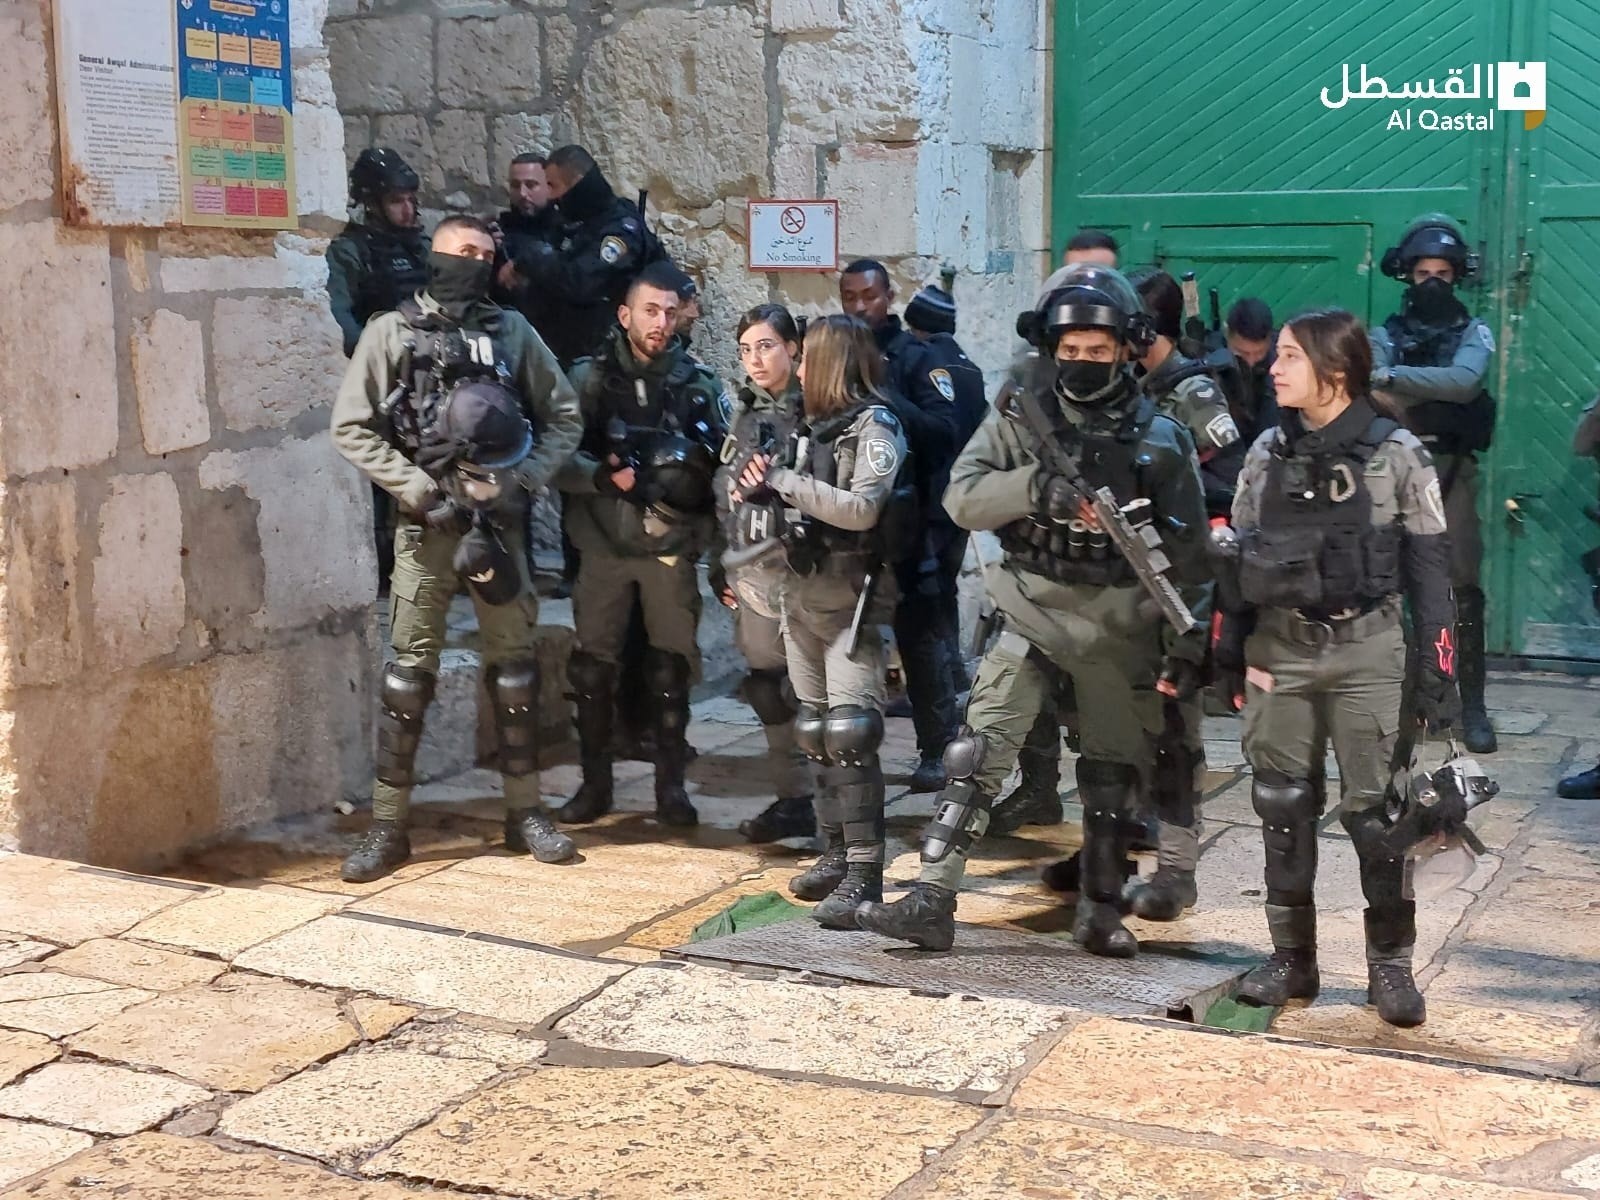 بالفيديو والصور: شرطة الاحتلال تستنفر في "الأقصى" والتوتر يسود المكان